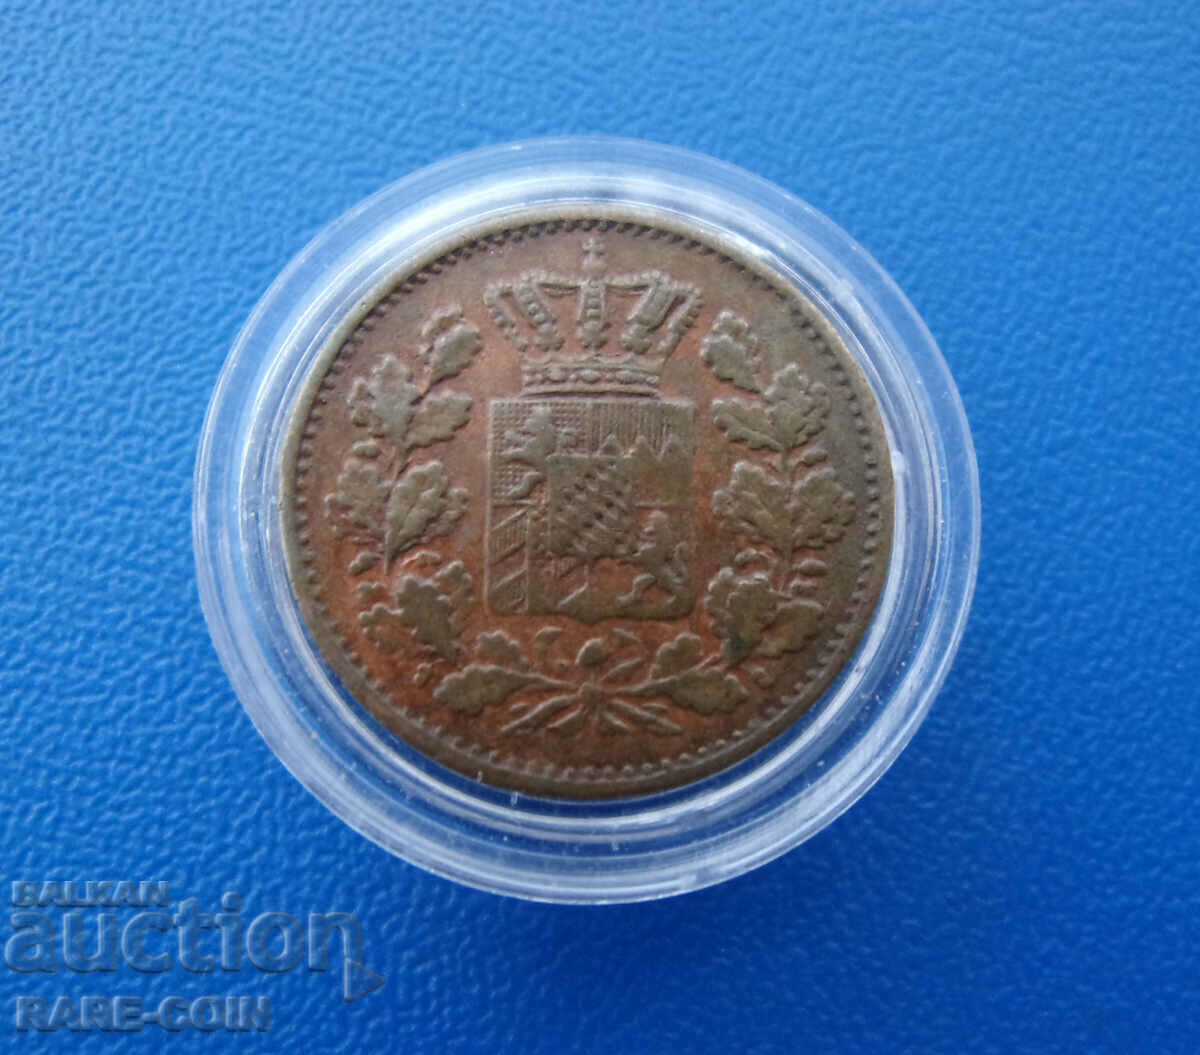 RS(53) Bayern Germany 1 Pfennig 1863 Rare